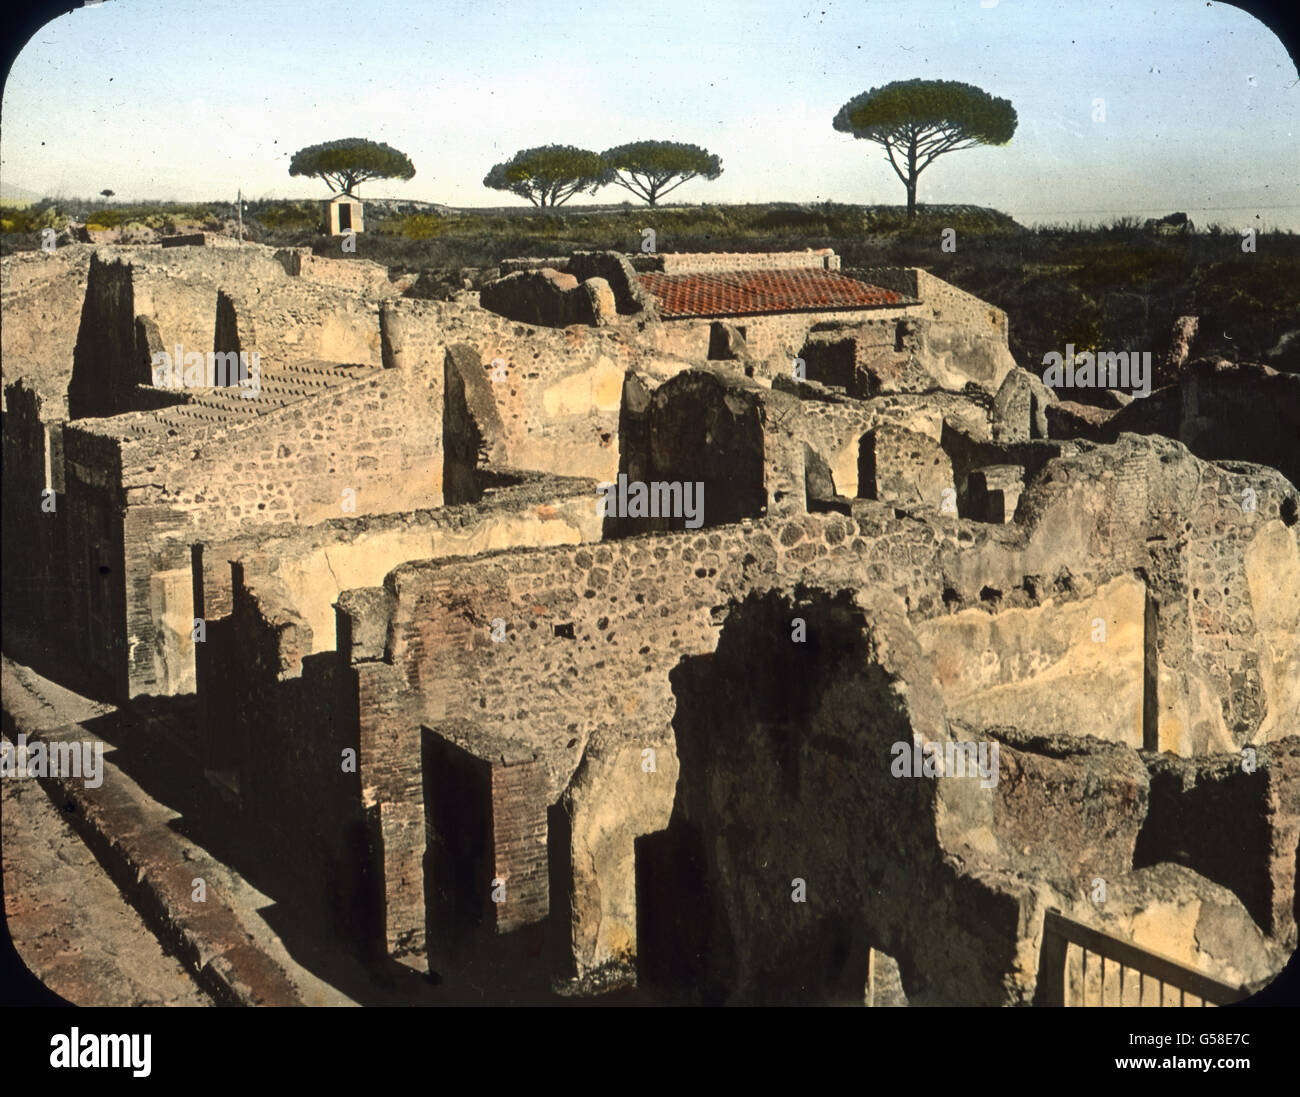 In der Nähe des Vesuvs liegt eine blühende Pompeji, einst Stadt von vielleicht 20.000 Einwohnern. Im Jahre 79 n. Chr. warf der Vénus mit einem homme eine solche Menge Bimsstein Asche und über den unglücklichen metertief daß dieser Ort, darunter begraben wurde. Von den Einwohnern par kamen 2000 um sich, die anderen konnten retten. Dans neuerer Zeit wurde ein Teil Pompejis wieder ausgegraben. Wrr haben dort des schönste Bild einer Stadt altrömischen. Die Trümmer sind so gut erhalten, dass man manchmal meinen, sollte die Bewohner hätten die Räume erst kürzzlich verlassen. Totenstadt geht aus der e Banque D'Images